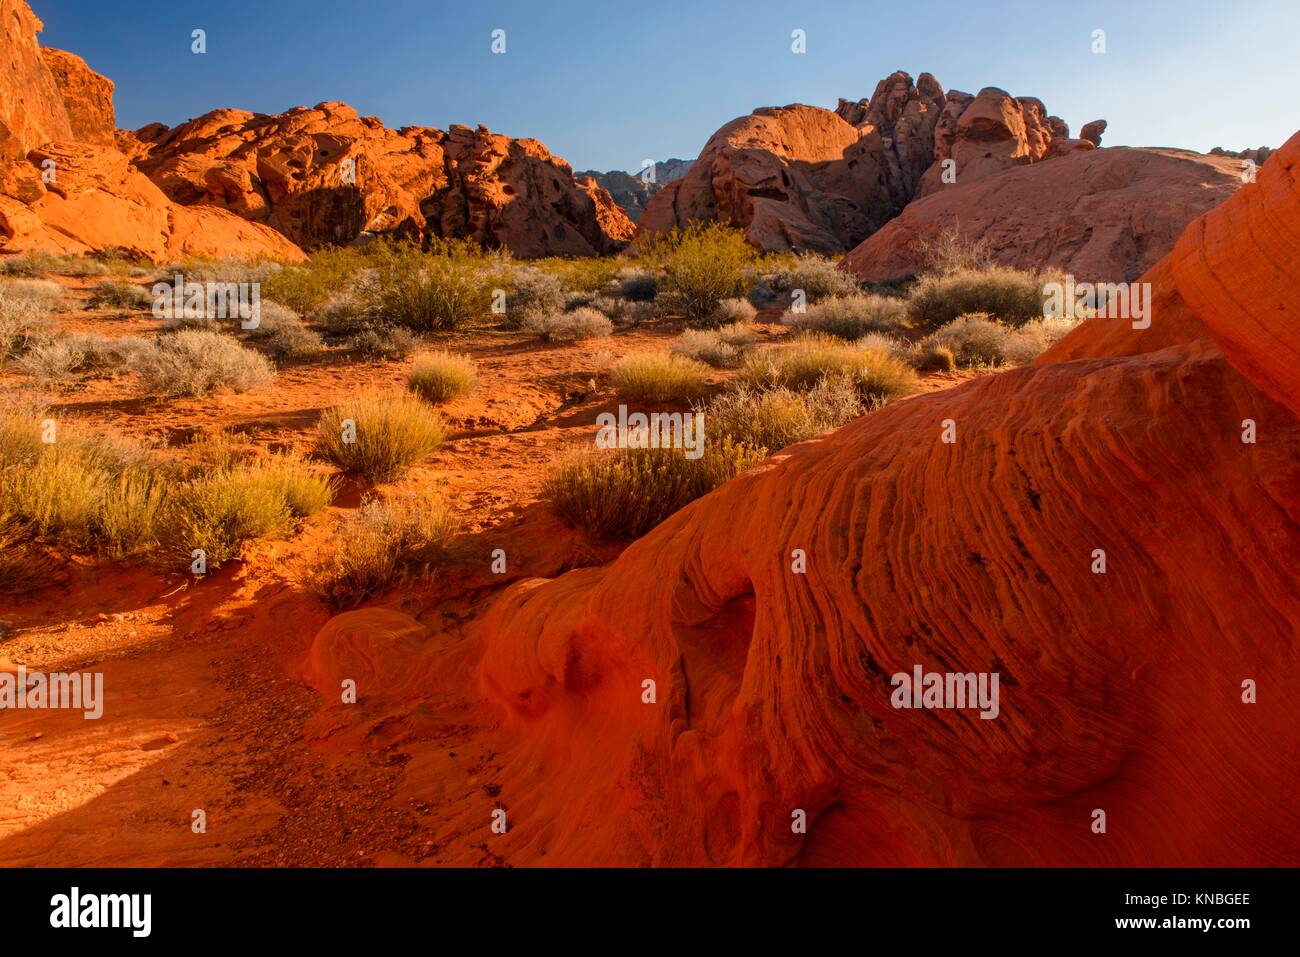 Weathered rocce rosse formazioni nel deserto, la Valle del Fuoco del parco statale, Nevada, Stati Uniti d'America. Foto Stock